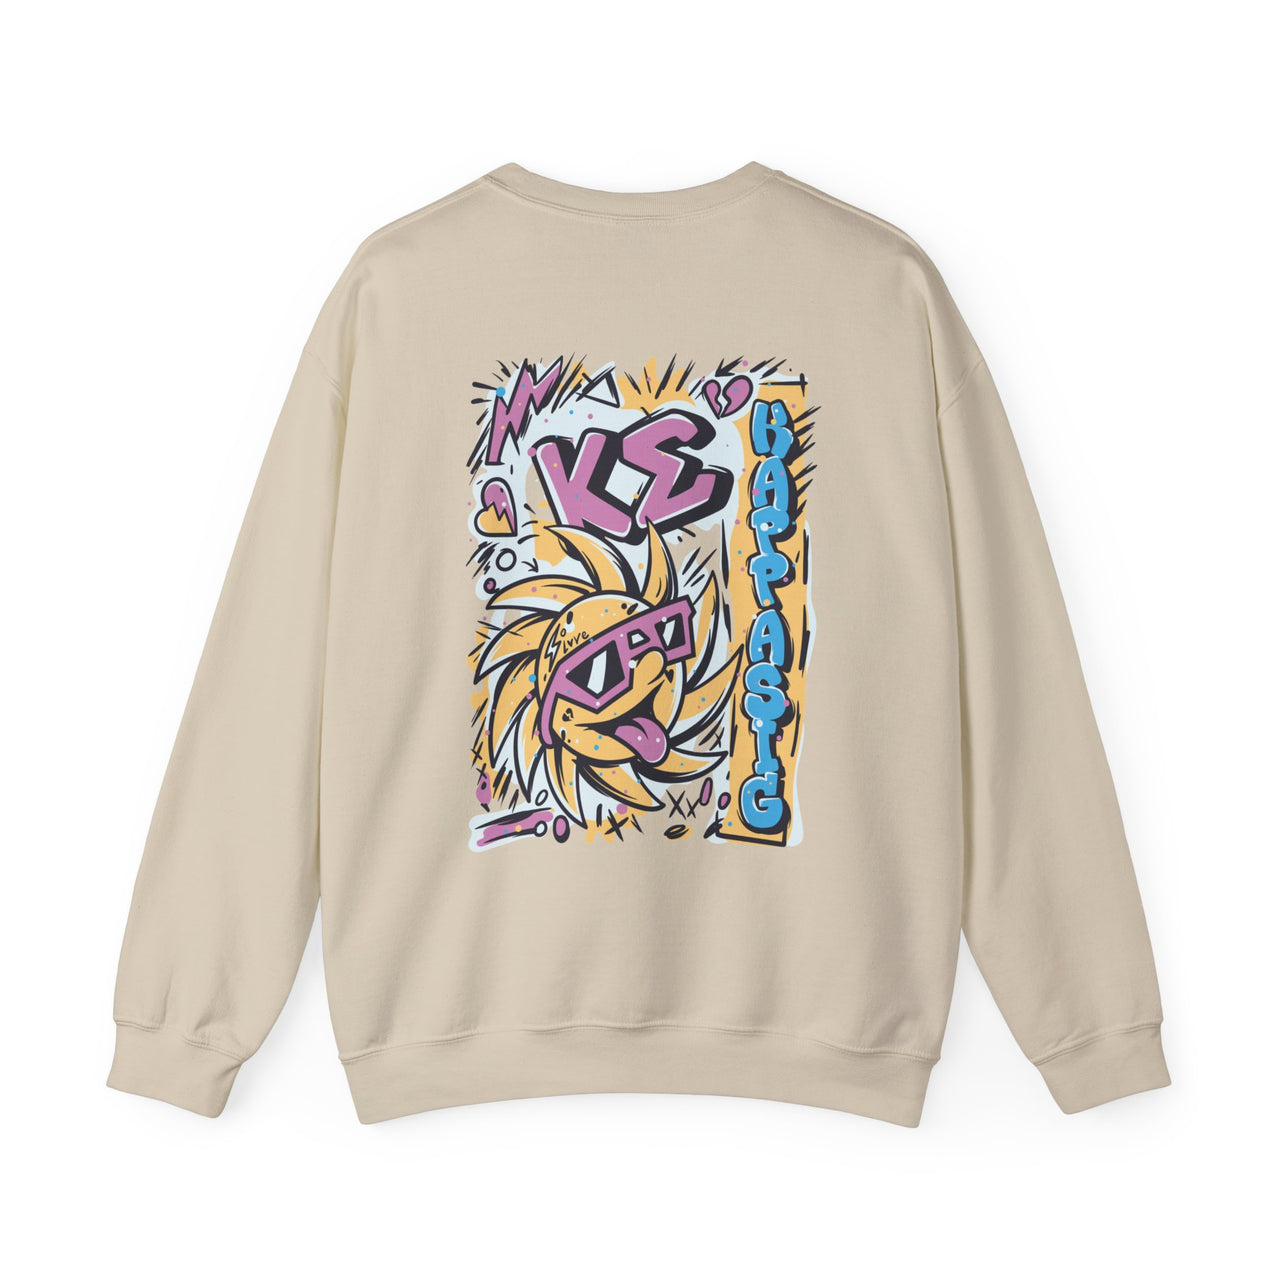 Kappa Sigma Graphic Crewneck Sweatshirt | Fun in the Sun